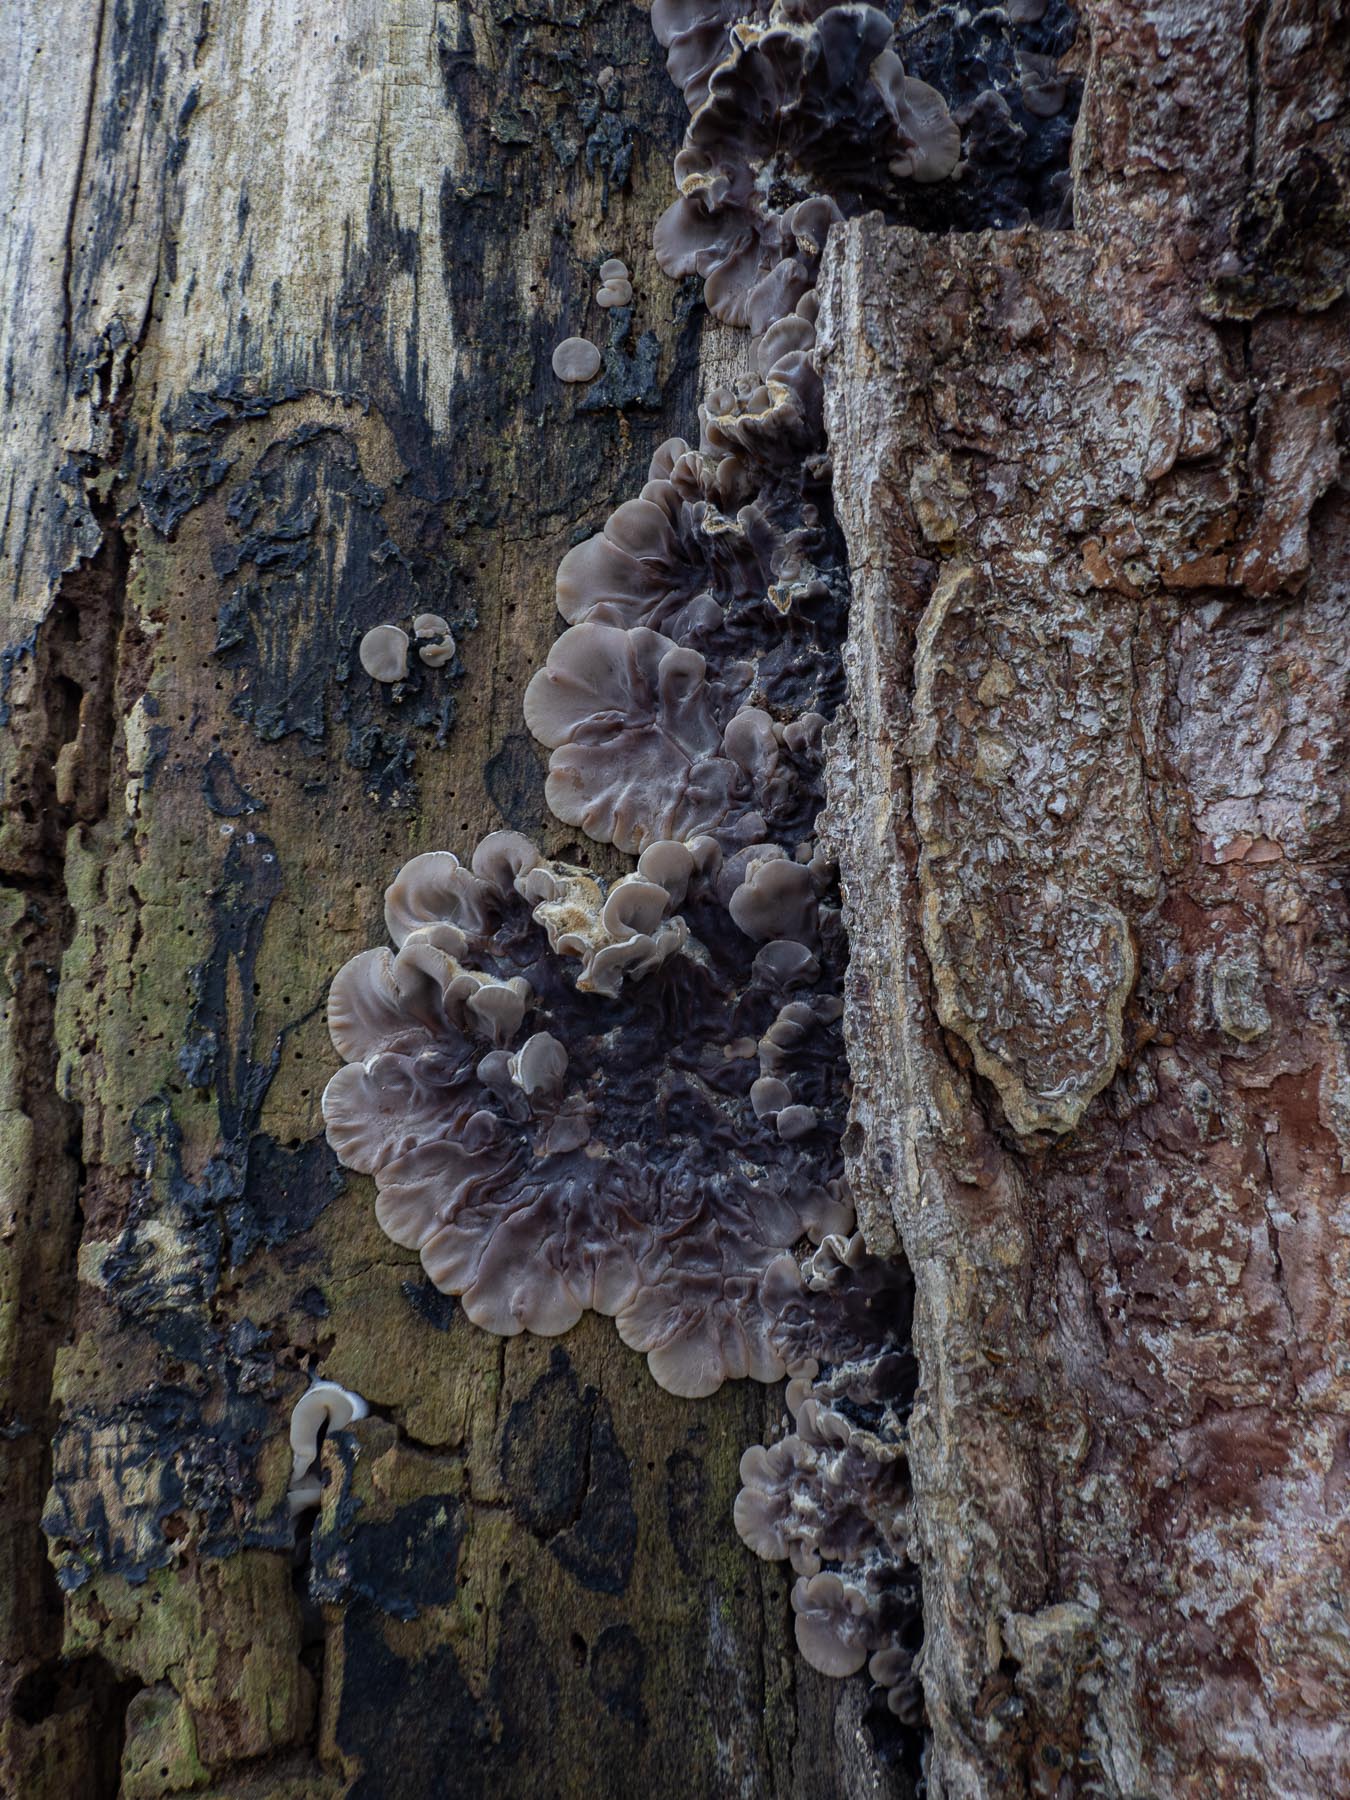 Аурикулярия извилистая (Auricularia mesenterica)В буковом лесу на мёртвой древесине. Стокгольм, декабрь 2020. Автор фото: Сутормина Марина